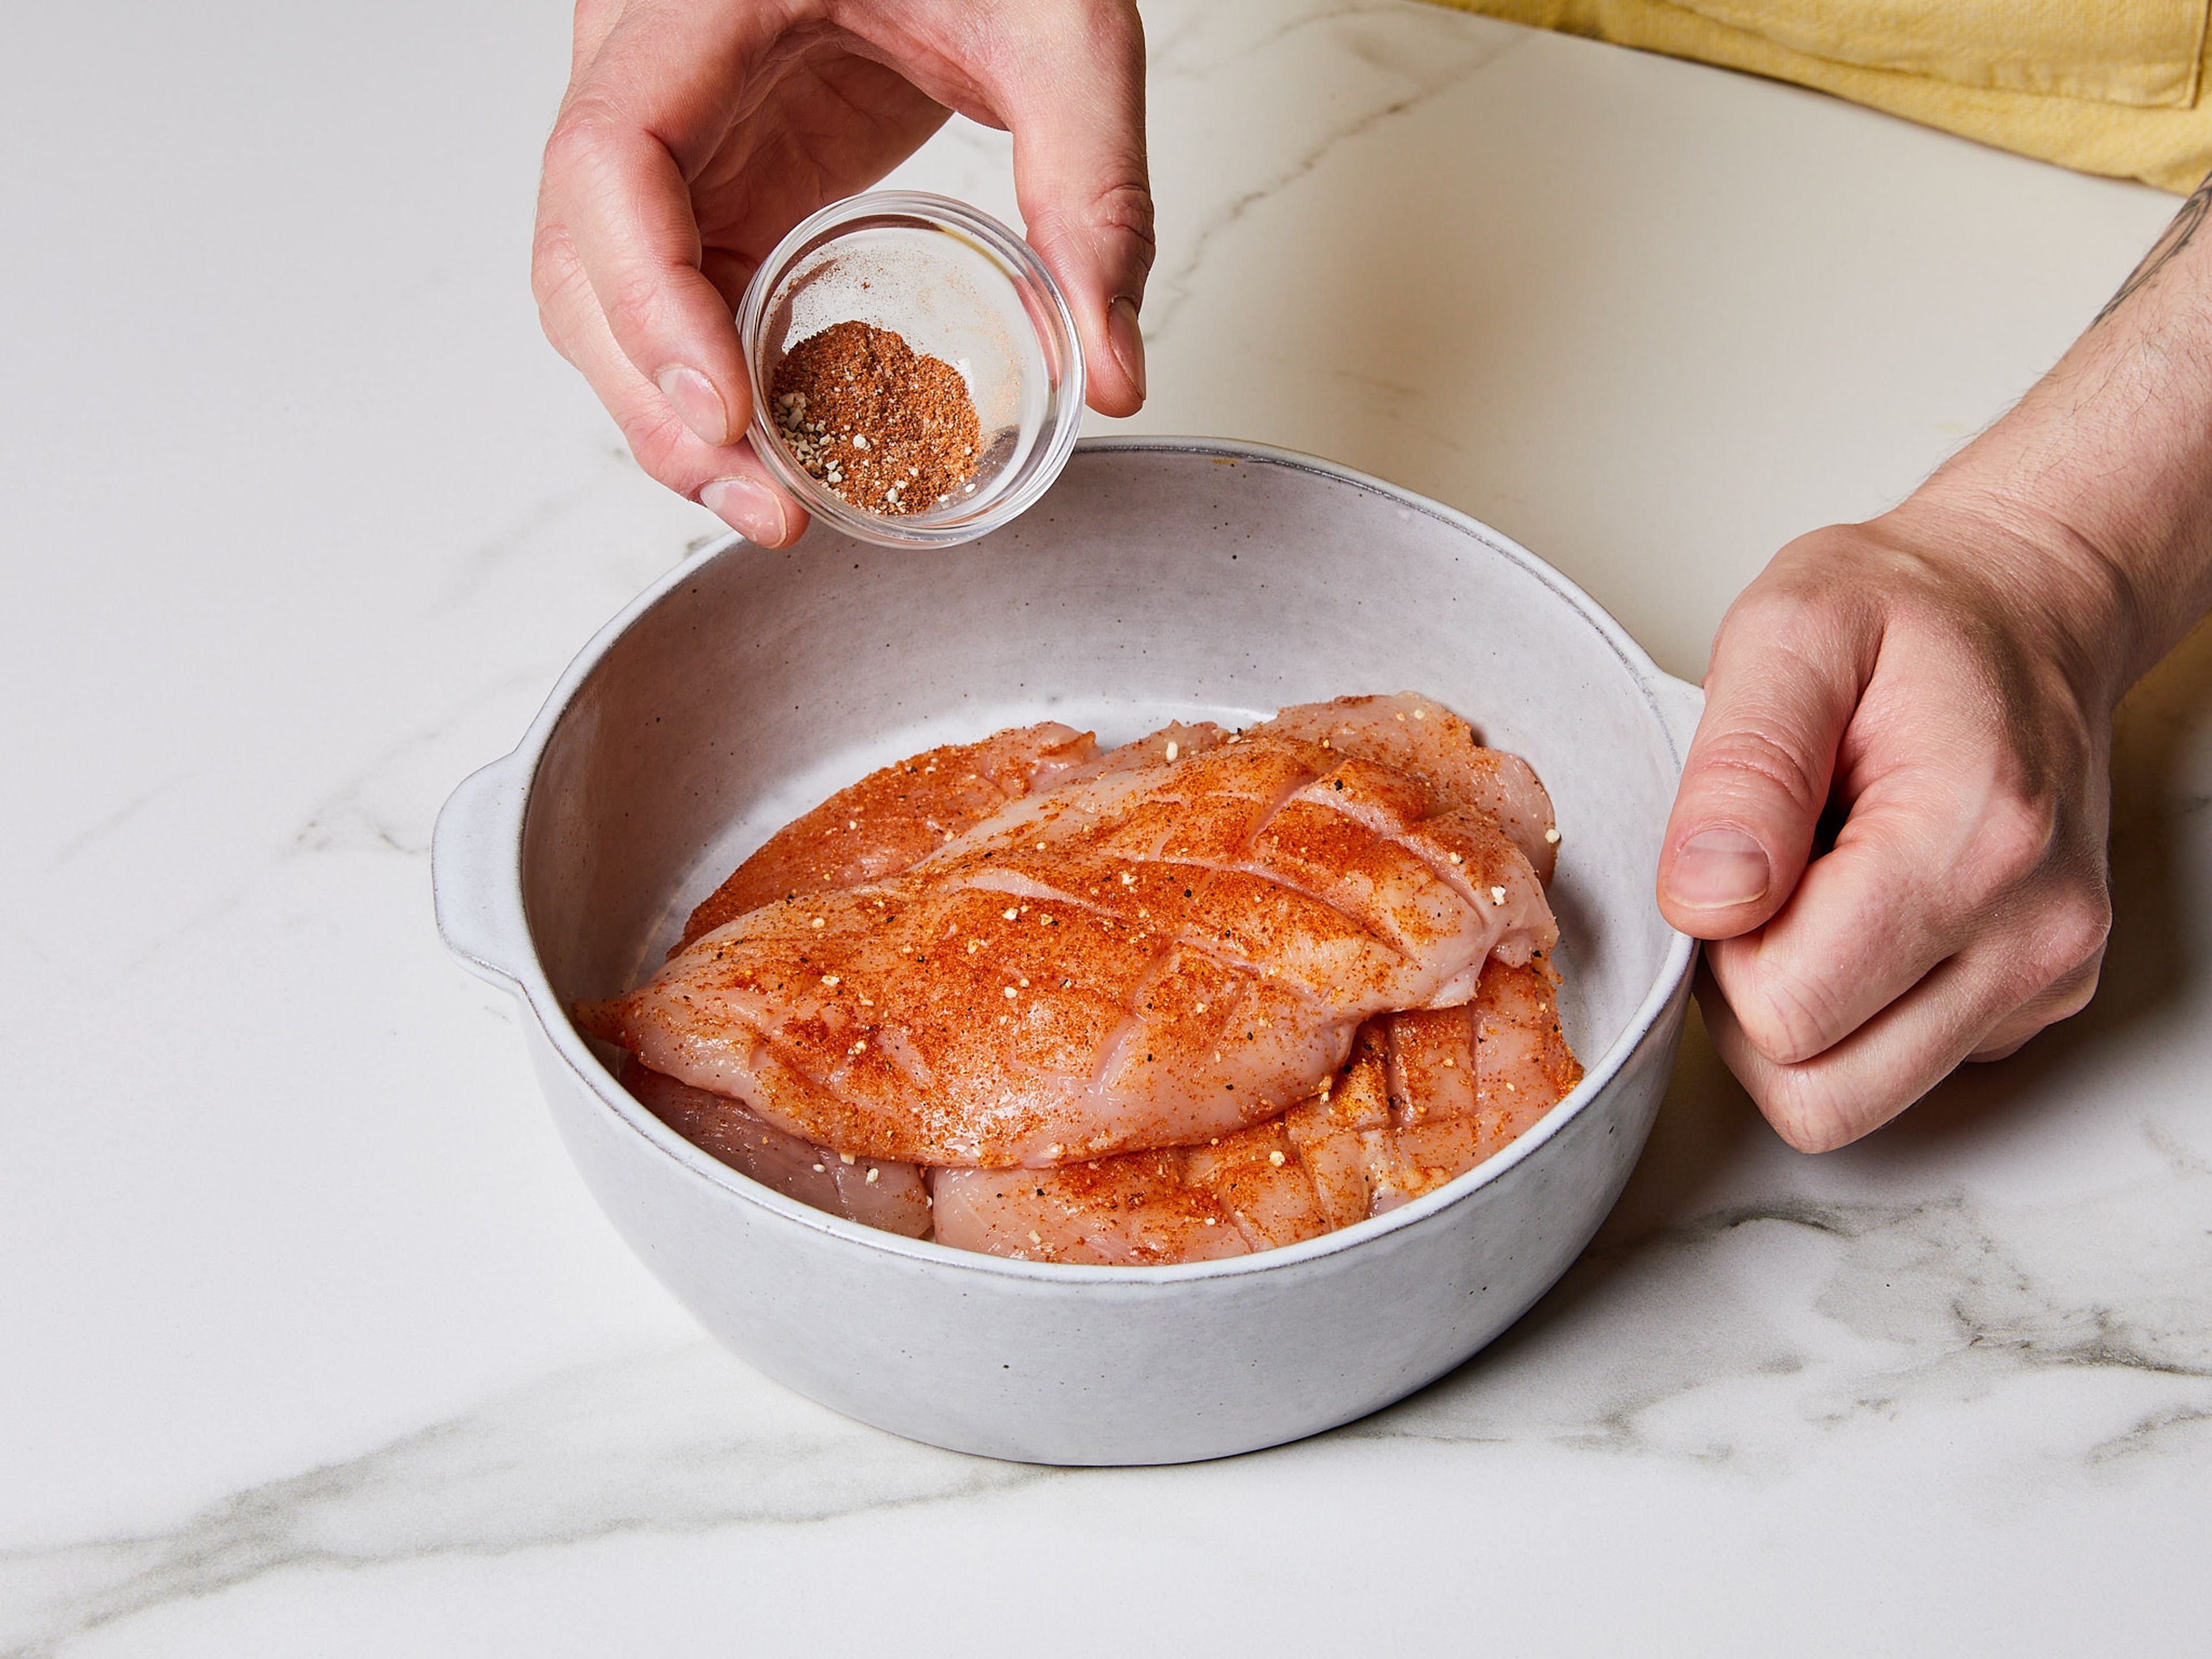 Hähnchenbrüste horizontal in zwei Filets pro Brust schneiden. Die Oberfläche der Filets rautenförmig einritzen, um die Oberfläche zu vergrößern, den Geschmack zu verbessern und die Garzeit zu verkürzen. Filets in einer Schüssel mit Paprikapulver, Knoblauchpulver, Zwiebelpulver und Salz würzen.